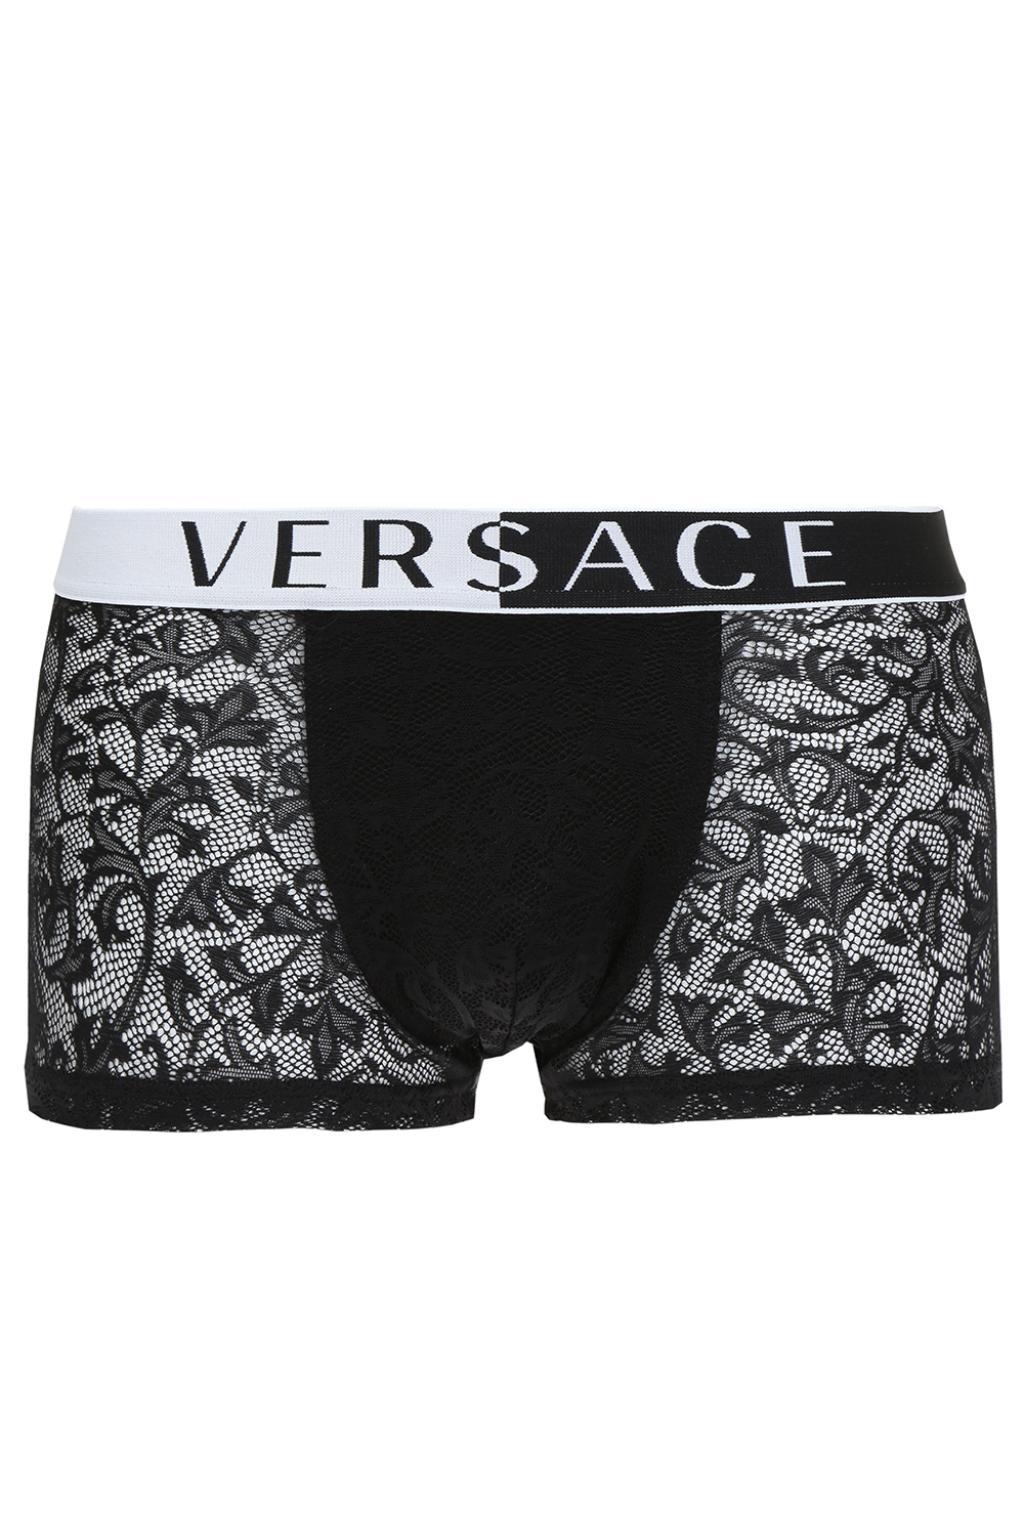 versace lace underwear